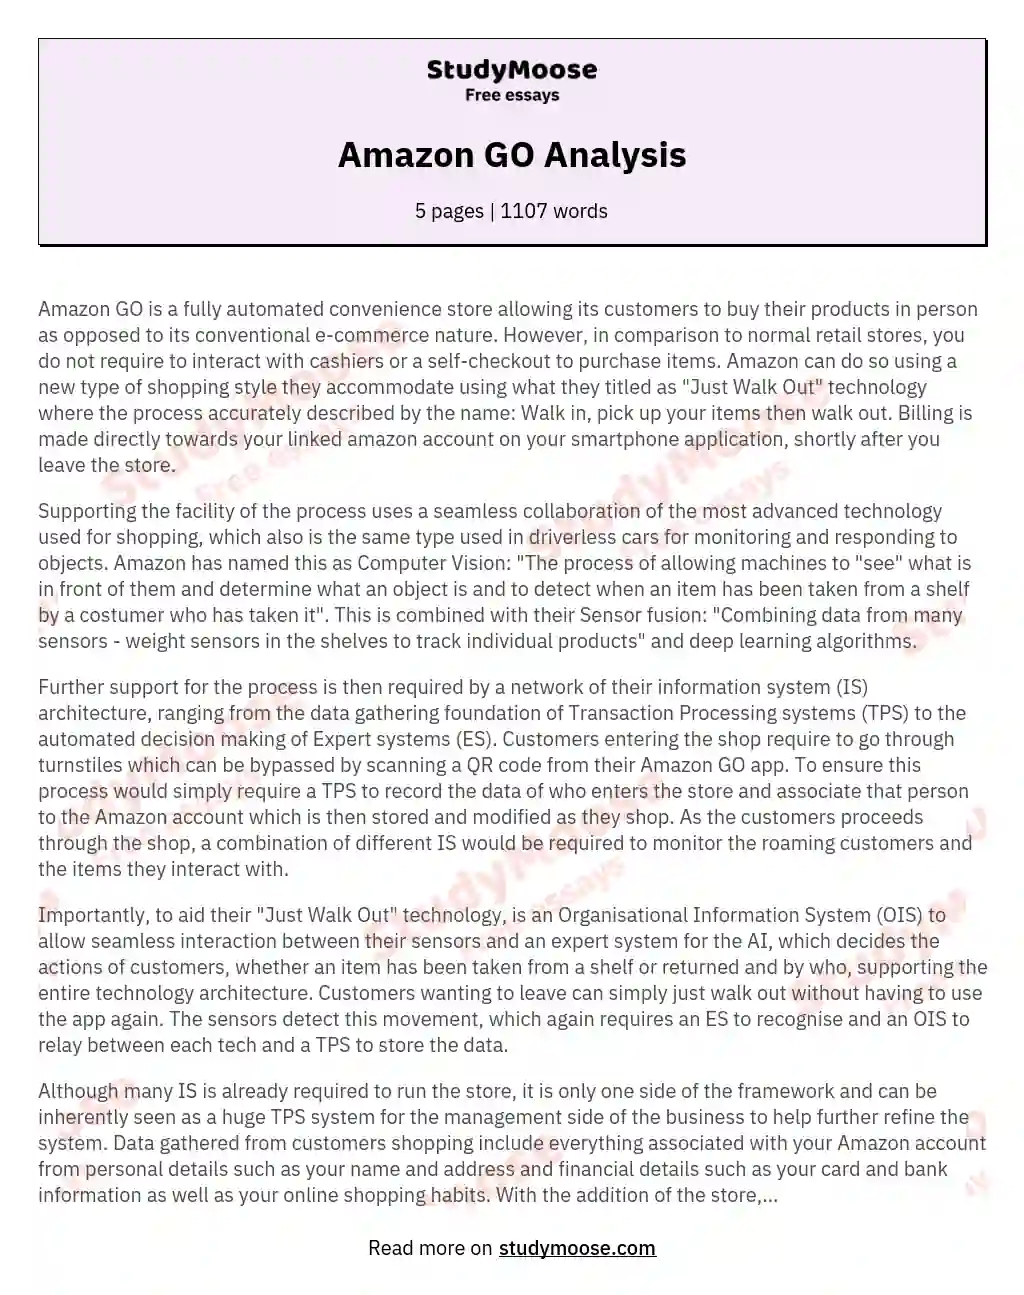 Amazon GO Analysis essay